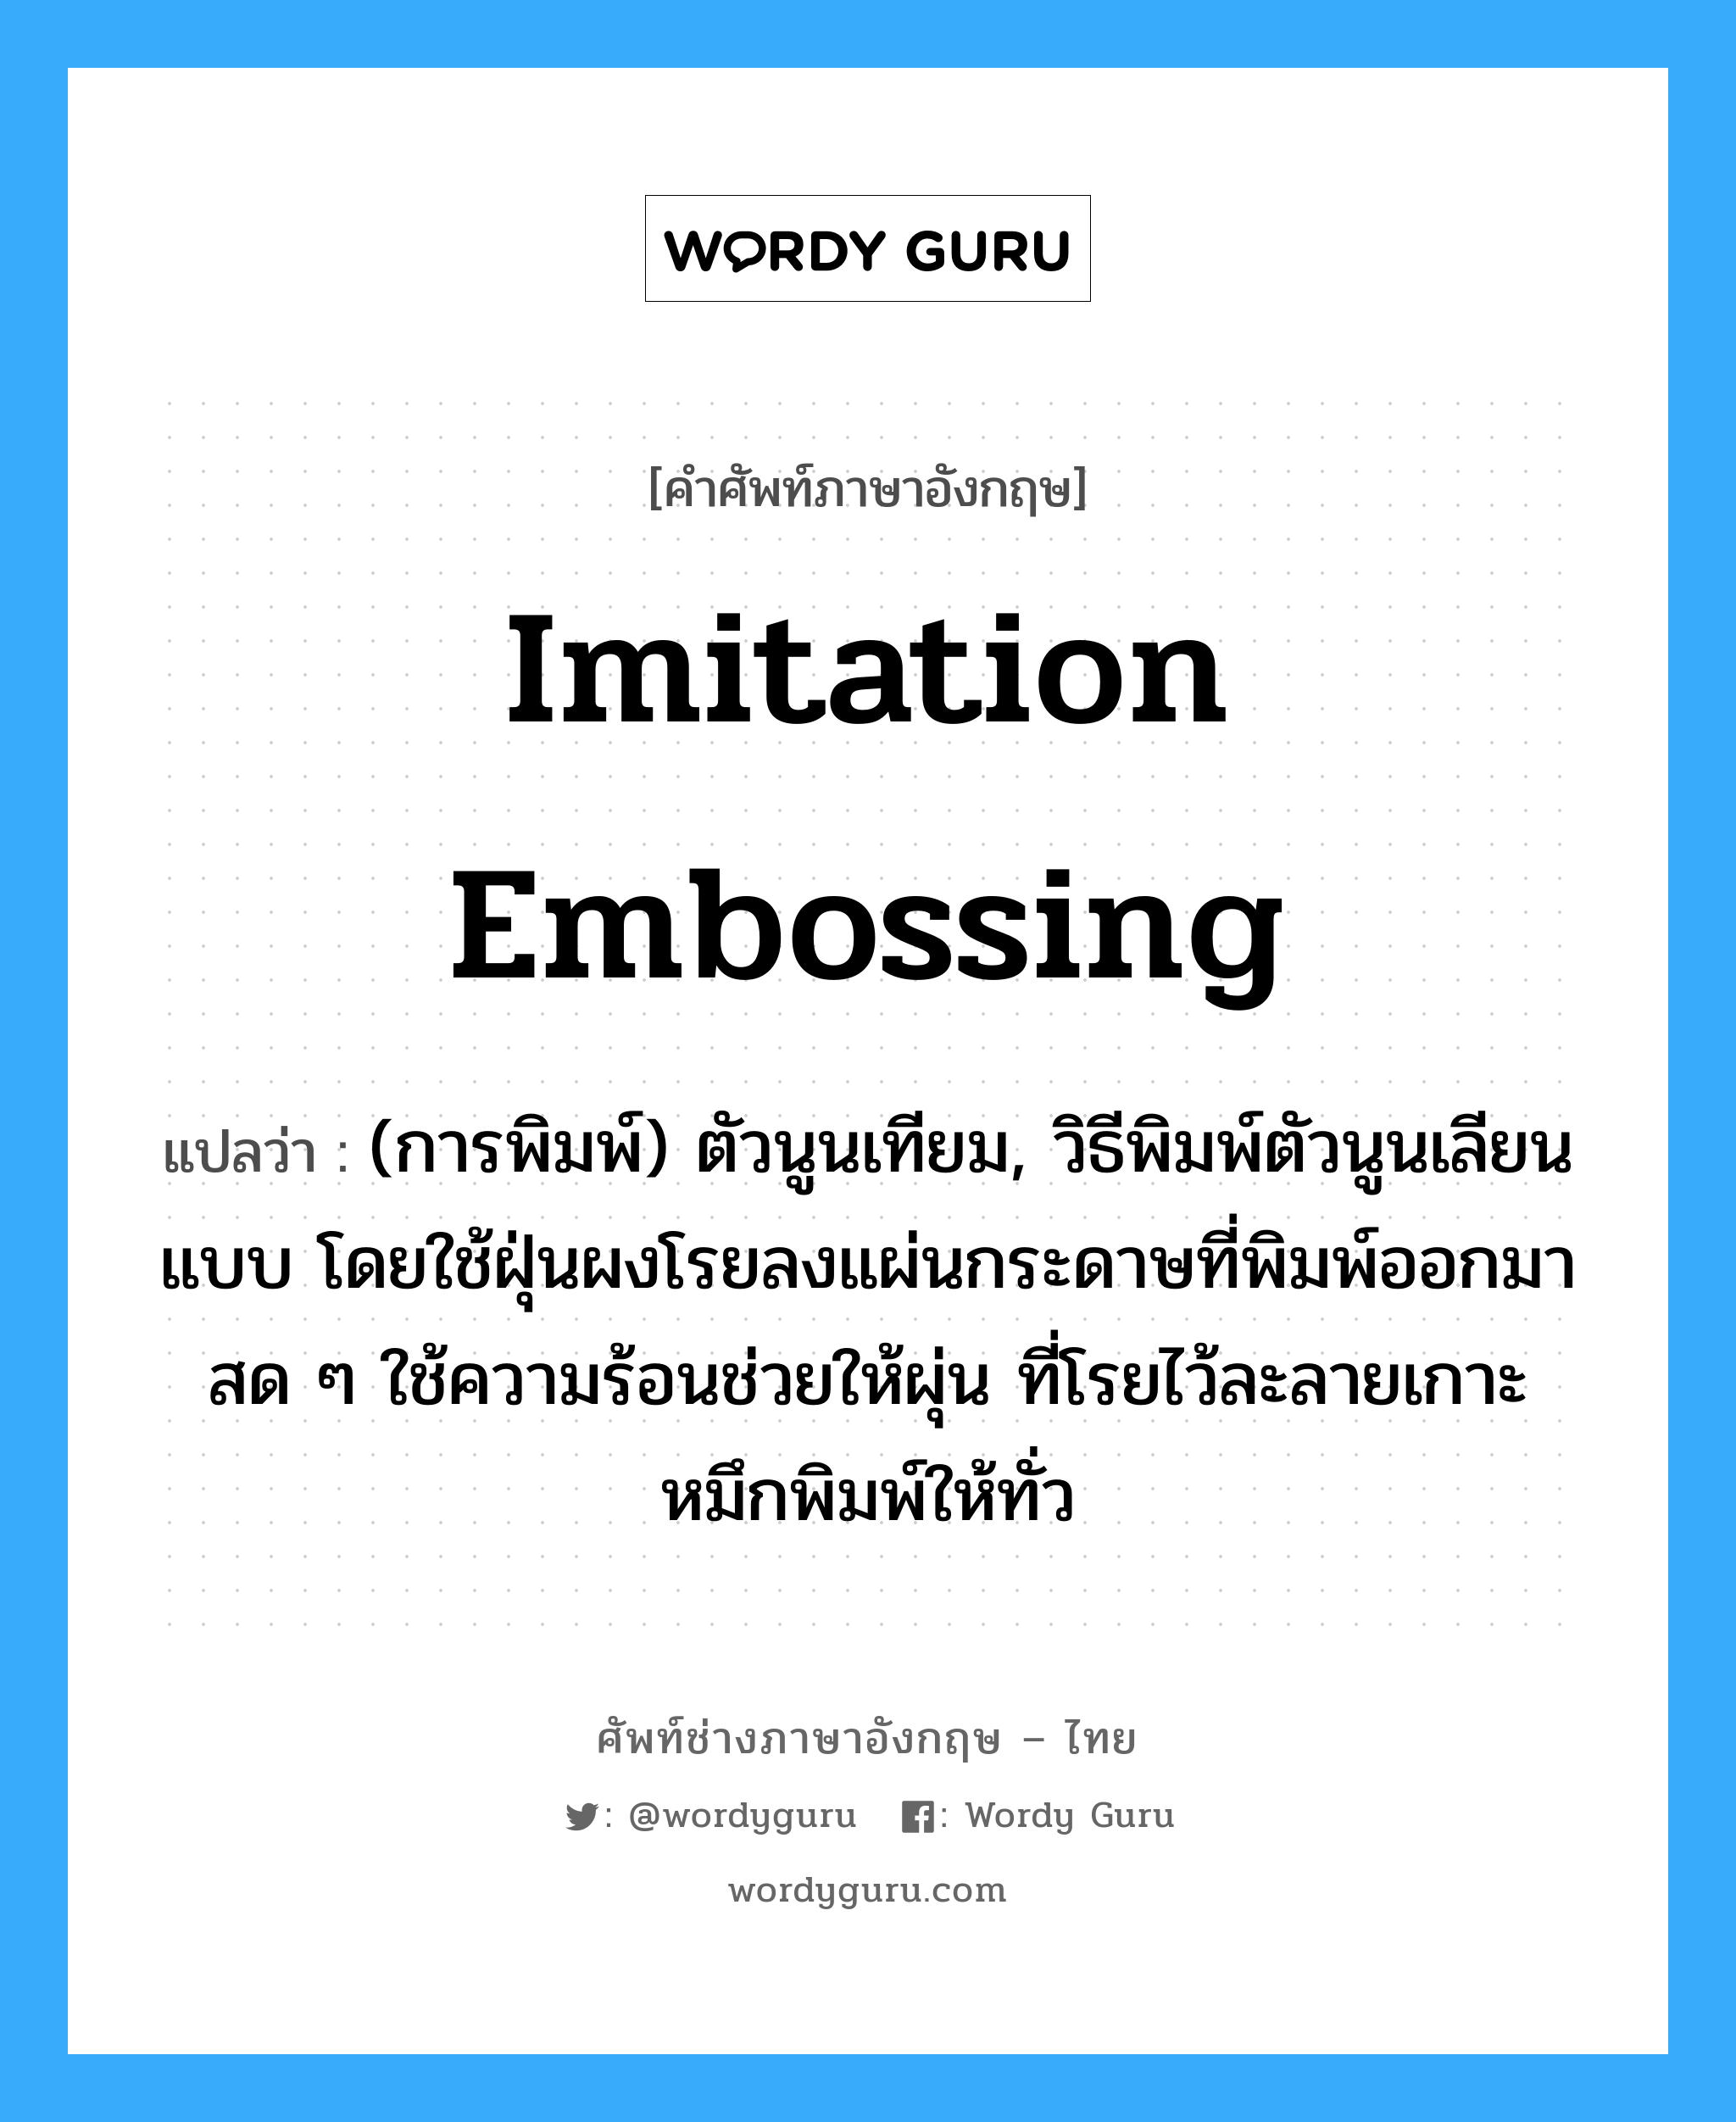 imitation embossing แปลว่า?, คำศัพท์ช่างภาษาอังกฤษ - ไทย imitation embossing คำศัพท์ภาษาอังกฤษ imitation embossing แปลว่า (การพิมพ์) ตัวนูนเทียม, วิธีพิมพ์ตัวนูนเลียนแบบ โดยใช้ฝุ่นผงโรยลงแผ่นกระดาษที่พิมพ์ออกมาสด ๆ ใช้ความร้อนช่วยให้ผุ่น ที่โรยไว้ละลายเกาะหมึกพิมพ์ให้ทั่ว